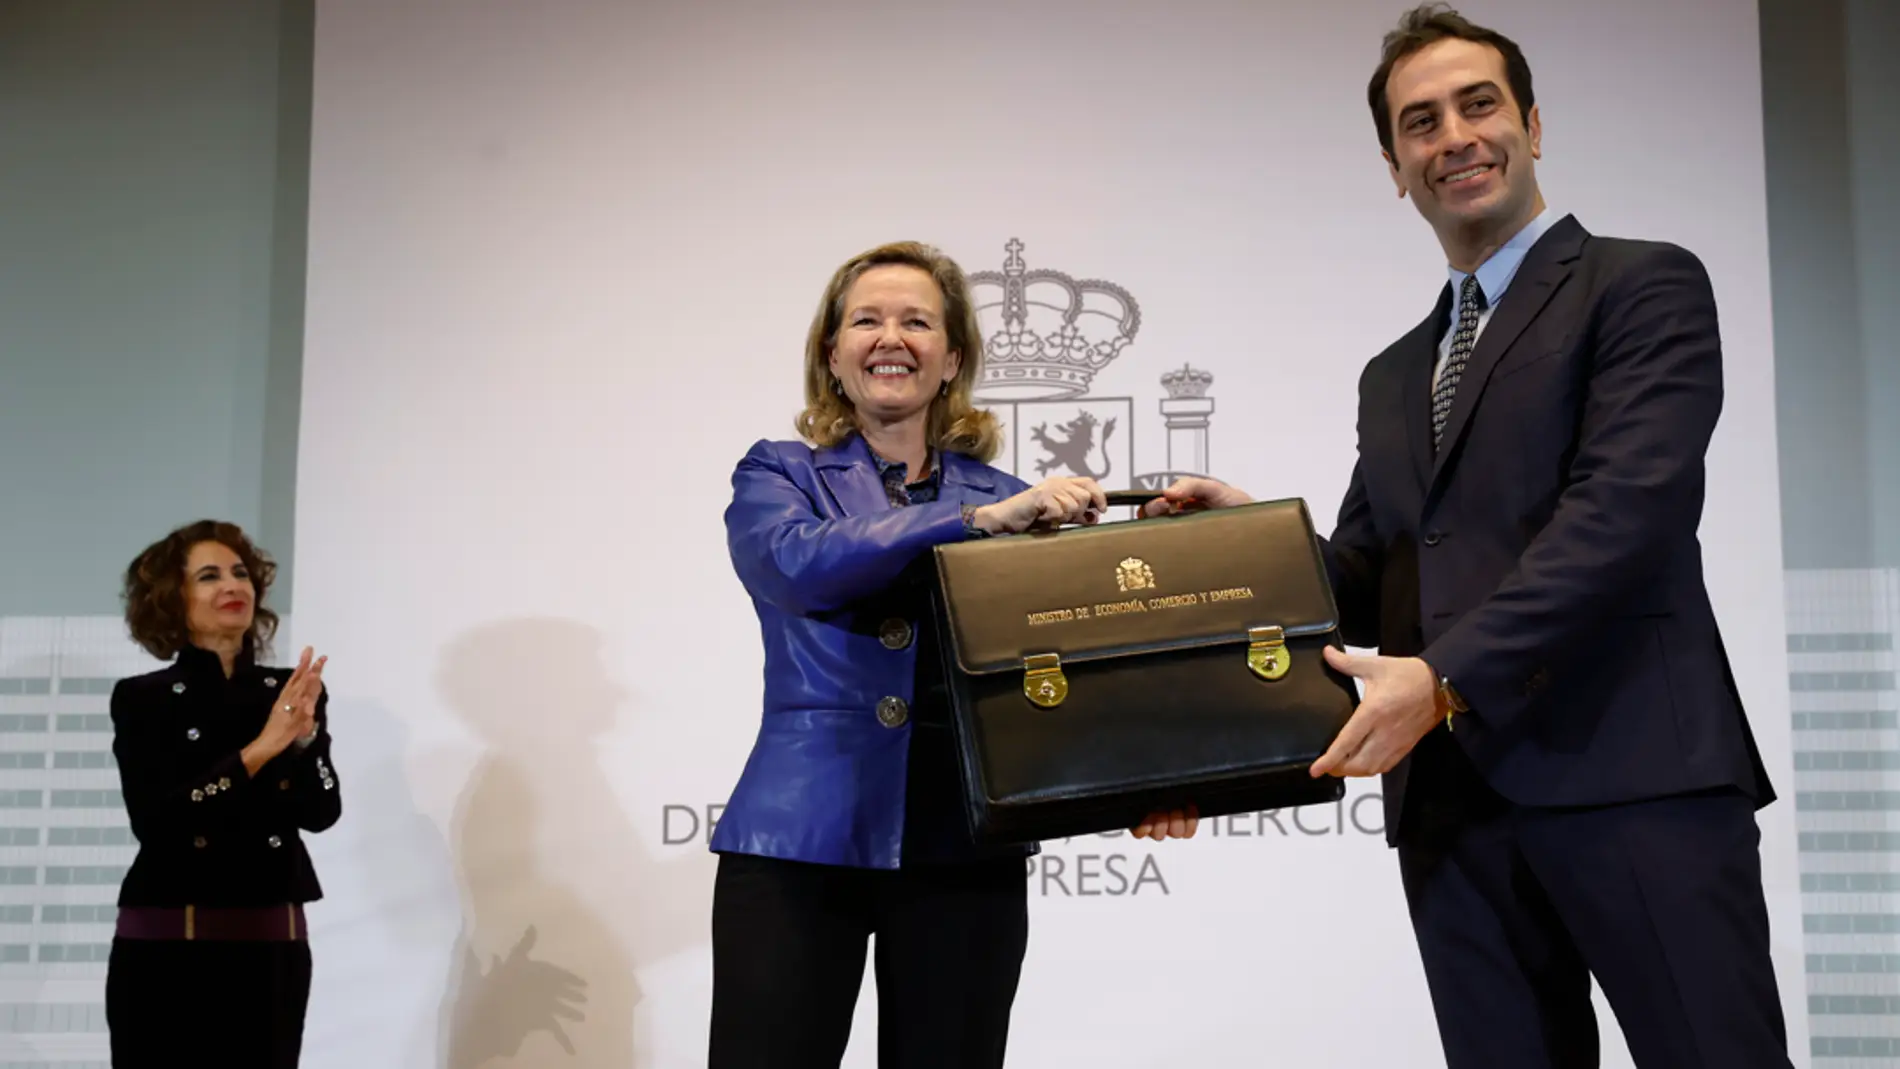  El nuevo ministro de Economía, Carlos Cuerpo, recibe la cartera de manos de su antecesora en el cargo, Nadia Calviño 